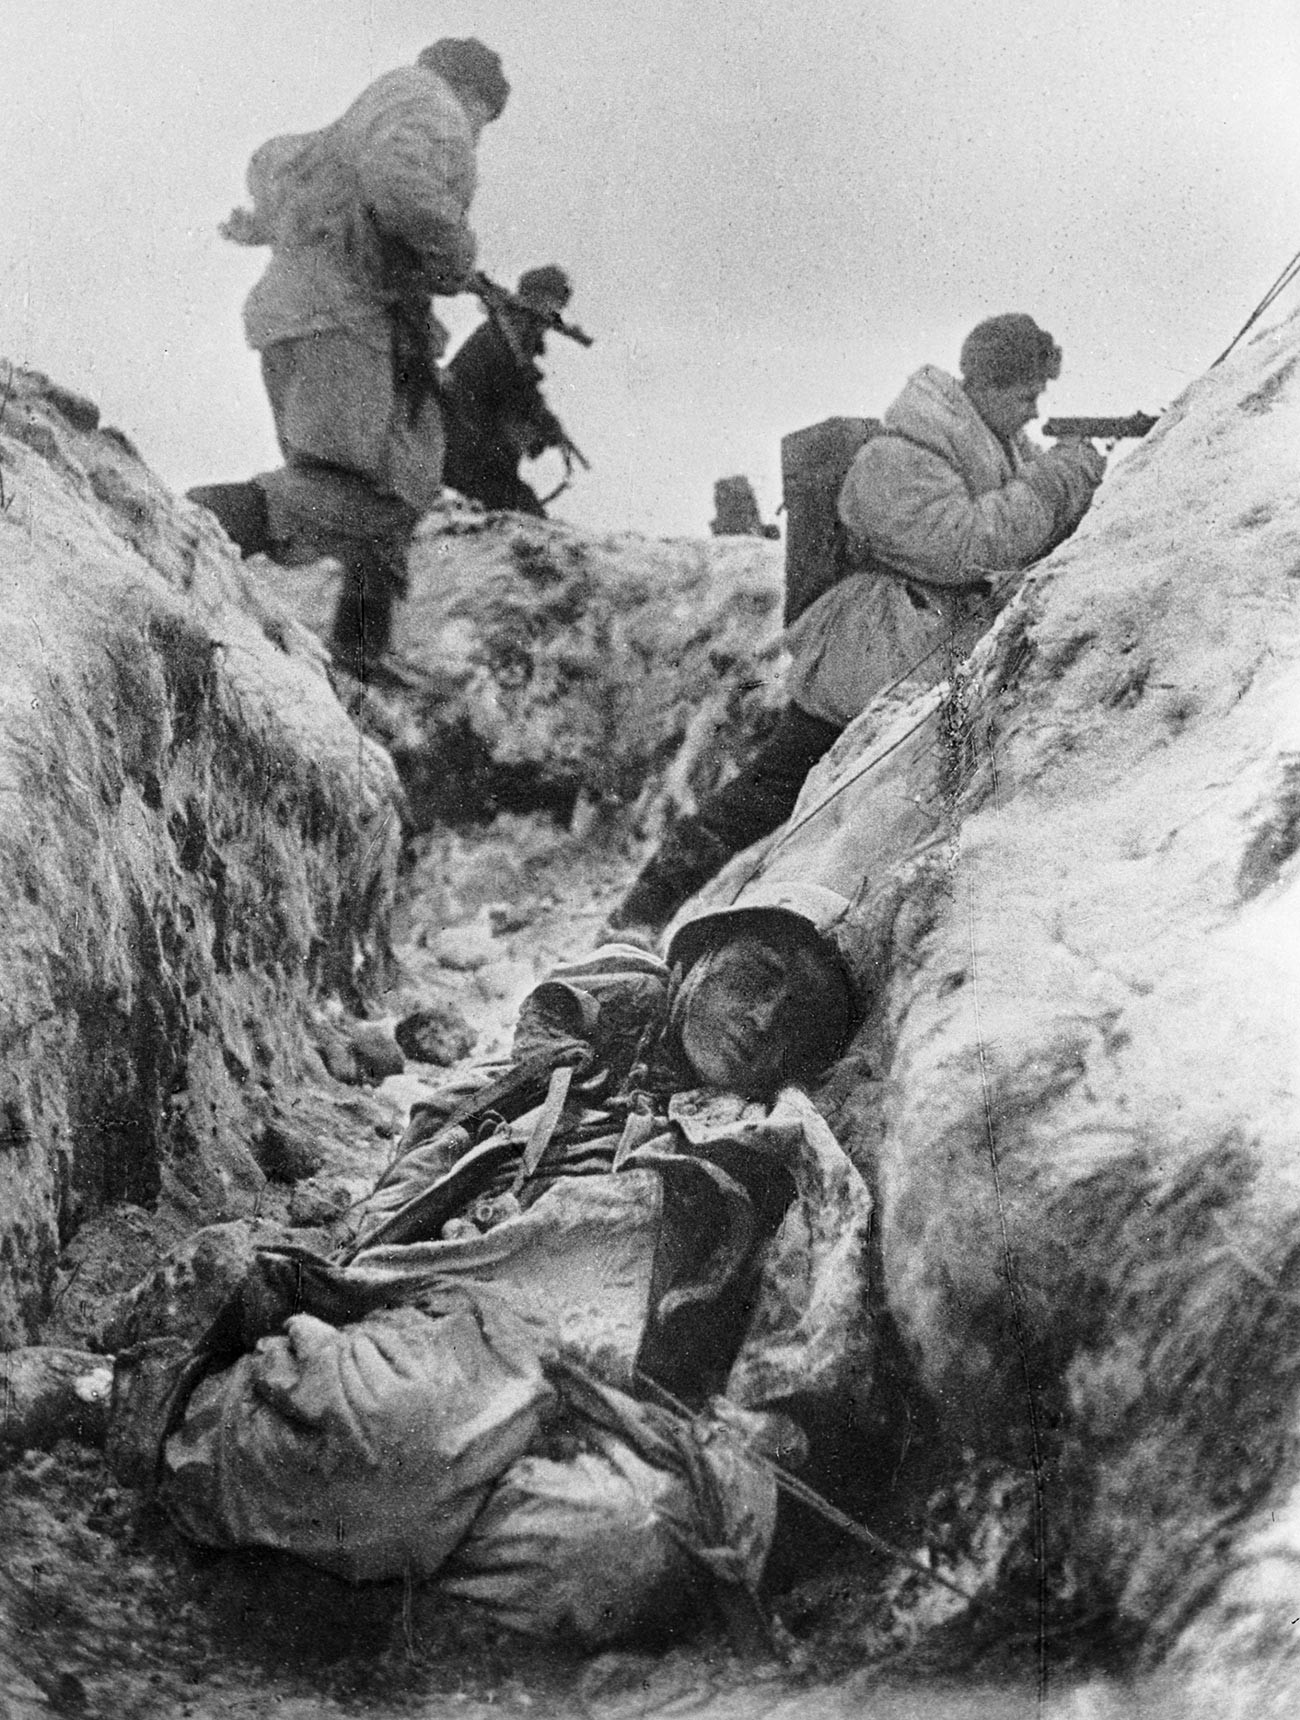 第二次大戦の東部戦線を写した枚の有名な写真 ロシア ビヨンド